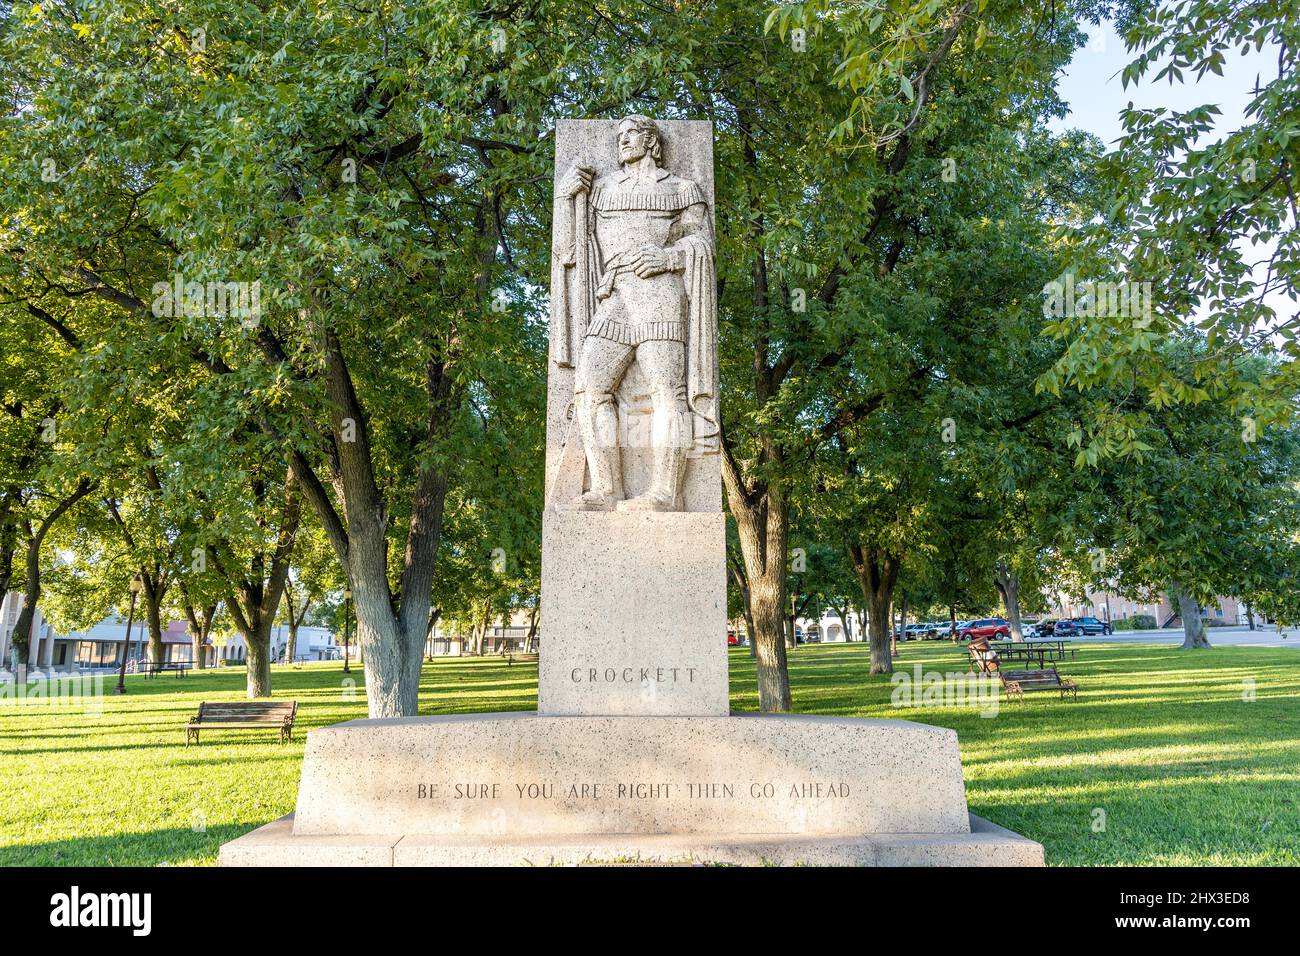 Ozona, TX - 17 octobre 2021 : cette sculpture de style Art déco de David Crockett, héros de l'Alamo, a été réalisée par William Mozart McVey en 1938. Banque D'Images